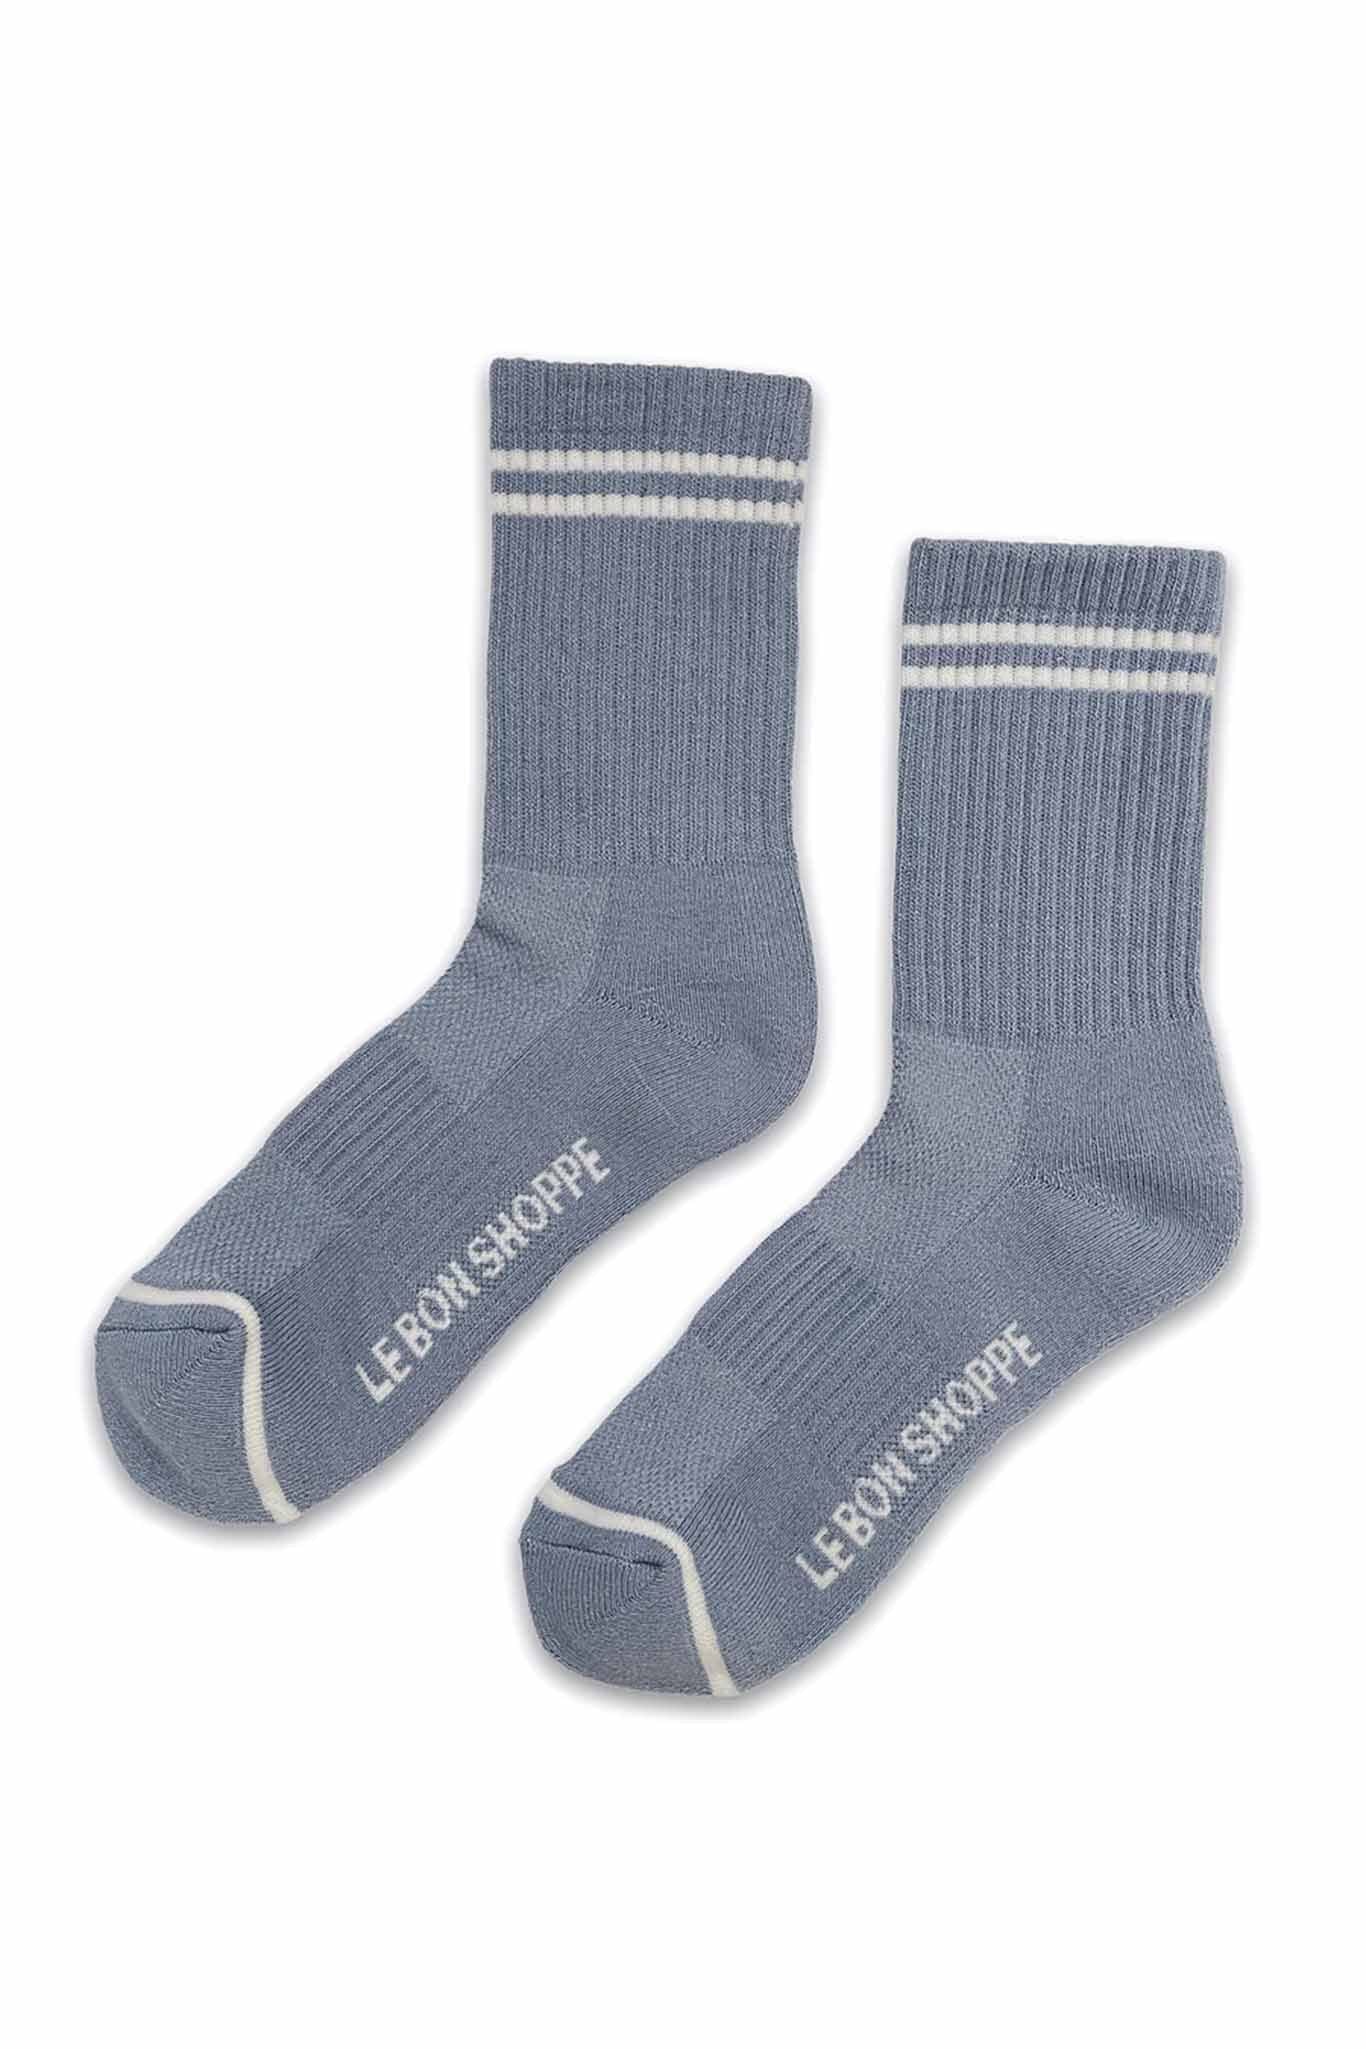 Le Bon Shoppe Boyfriend Socks - Blue Grey